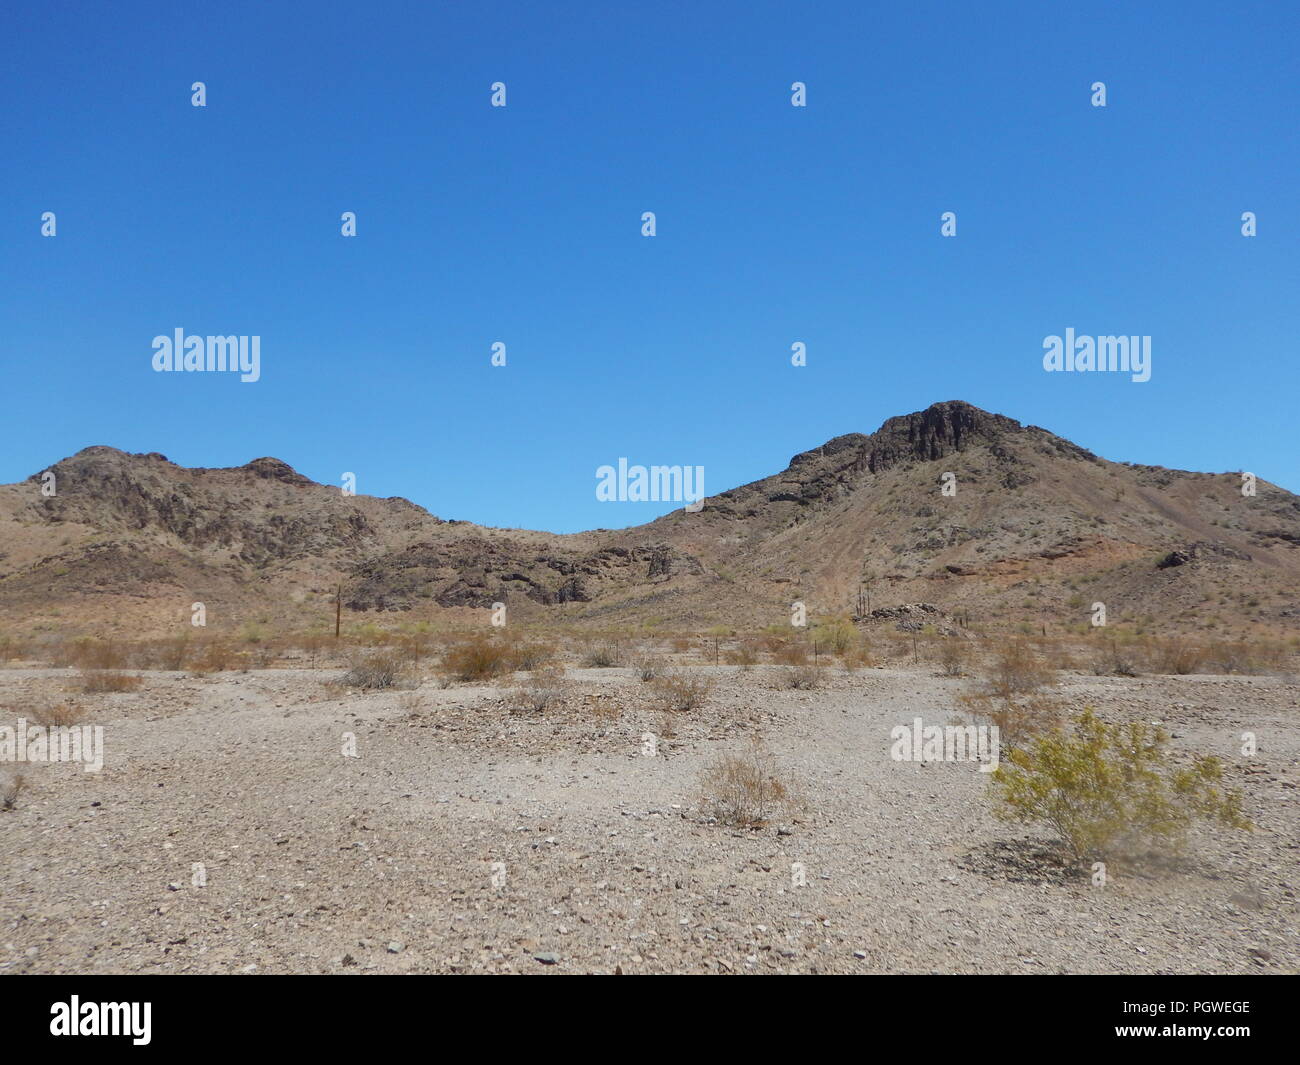 Paysage désertique aride désert aride avec Rocky Mountains sous ciel bleu. Banque D'Images